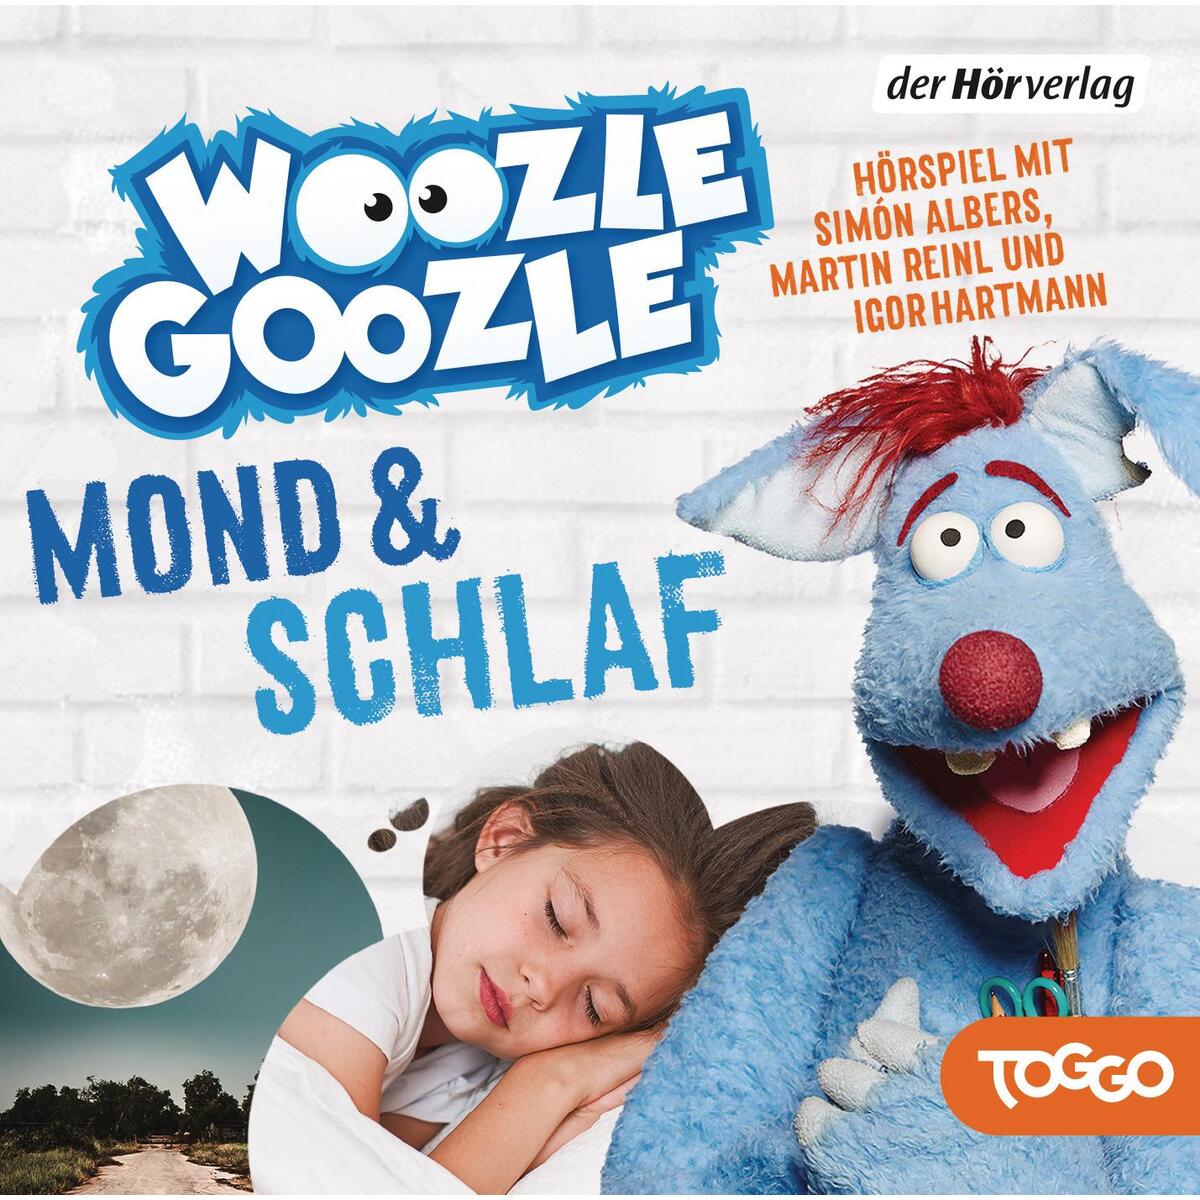 Woozle Goozle 05. Mond & Schlaf von Hoerverlag DHV Der